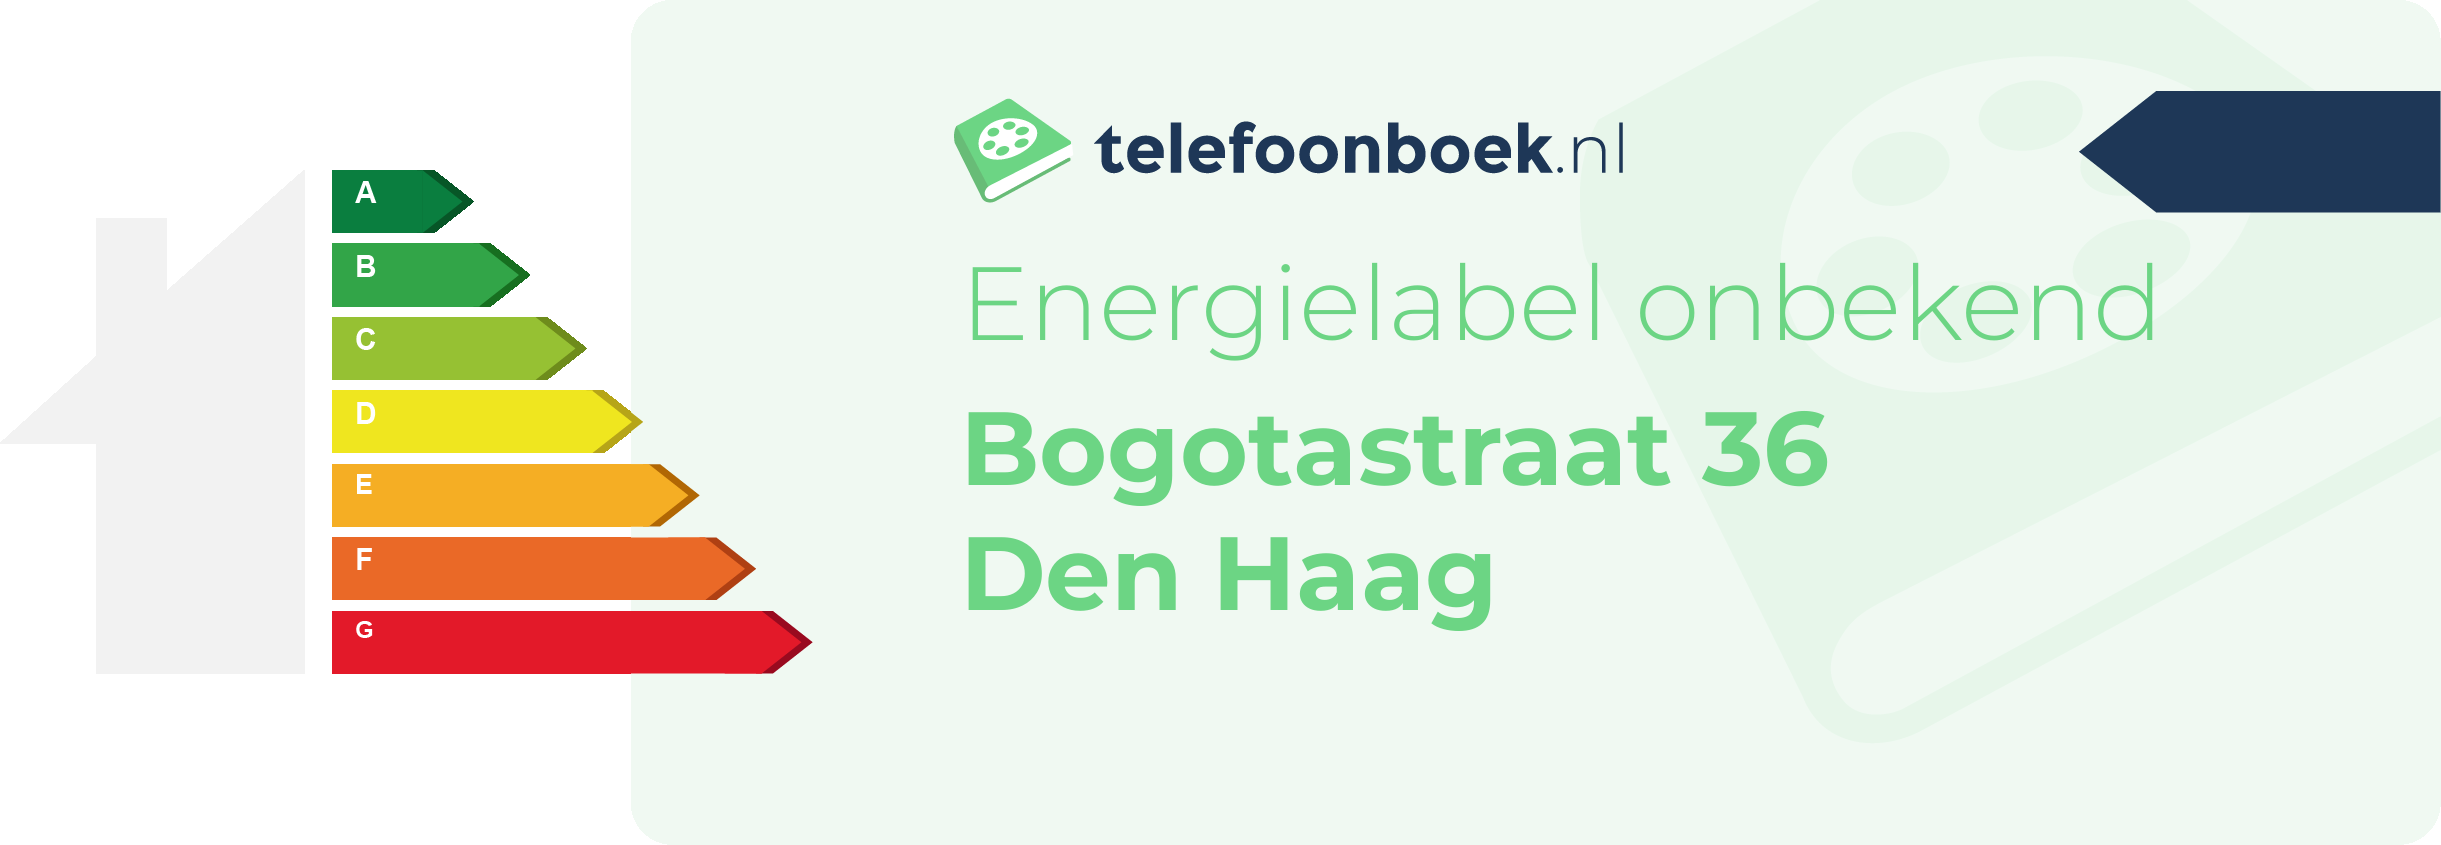 Energielabel Bogotastraat 36 Den Haag